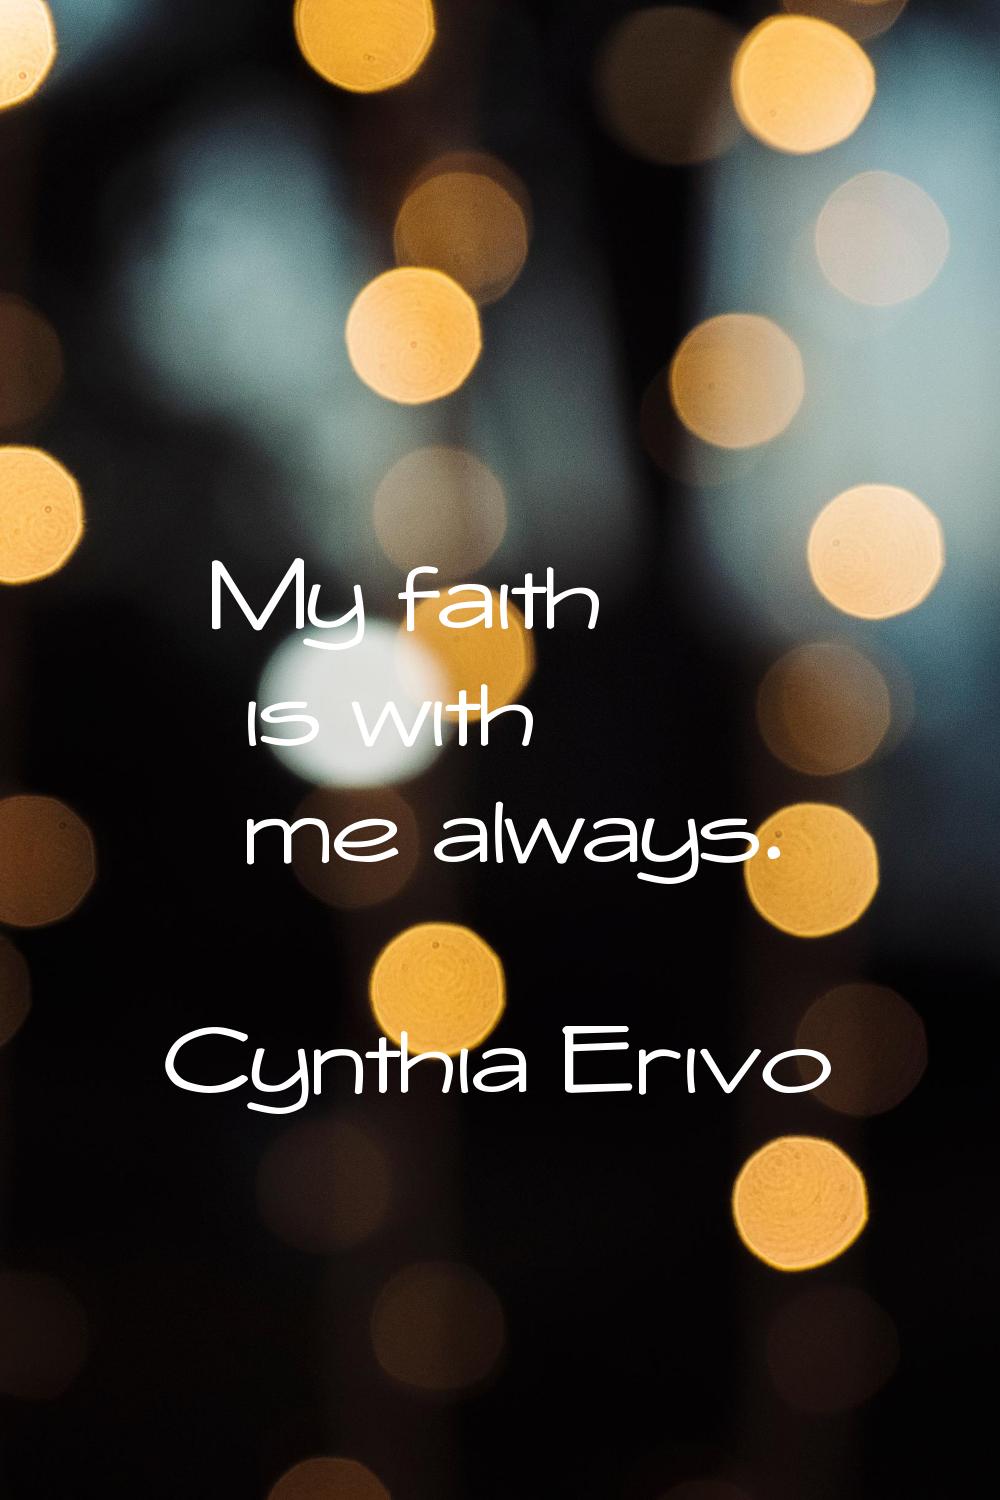 My faith is with me always.